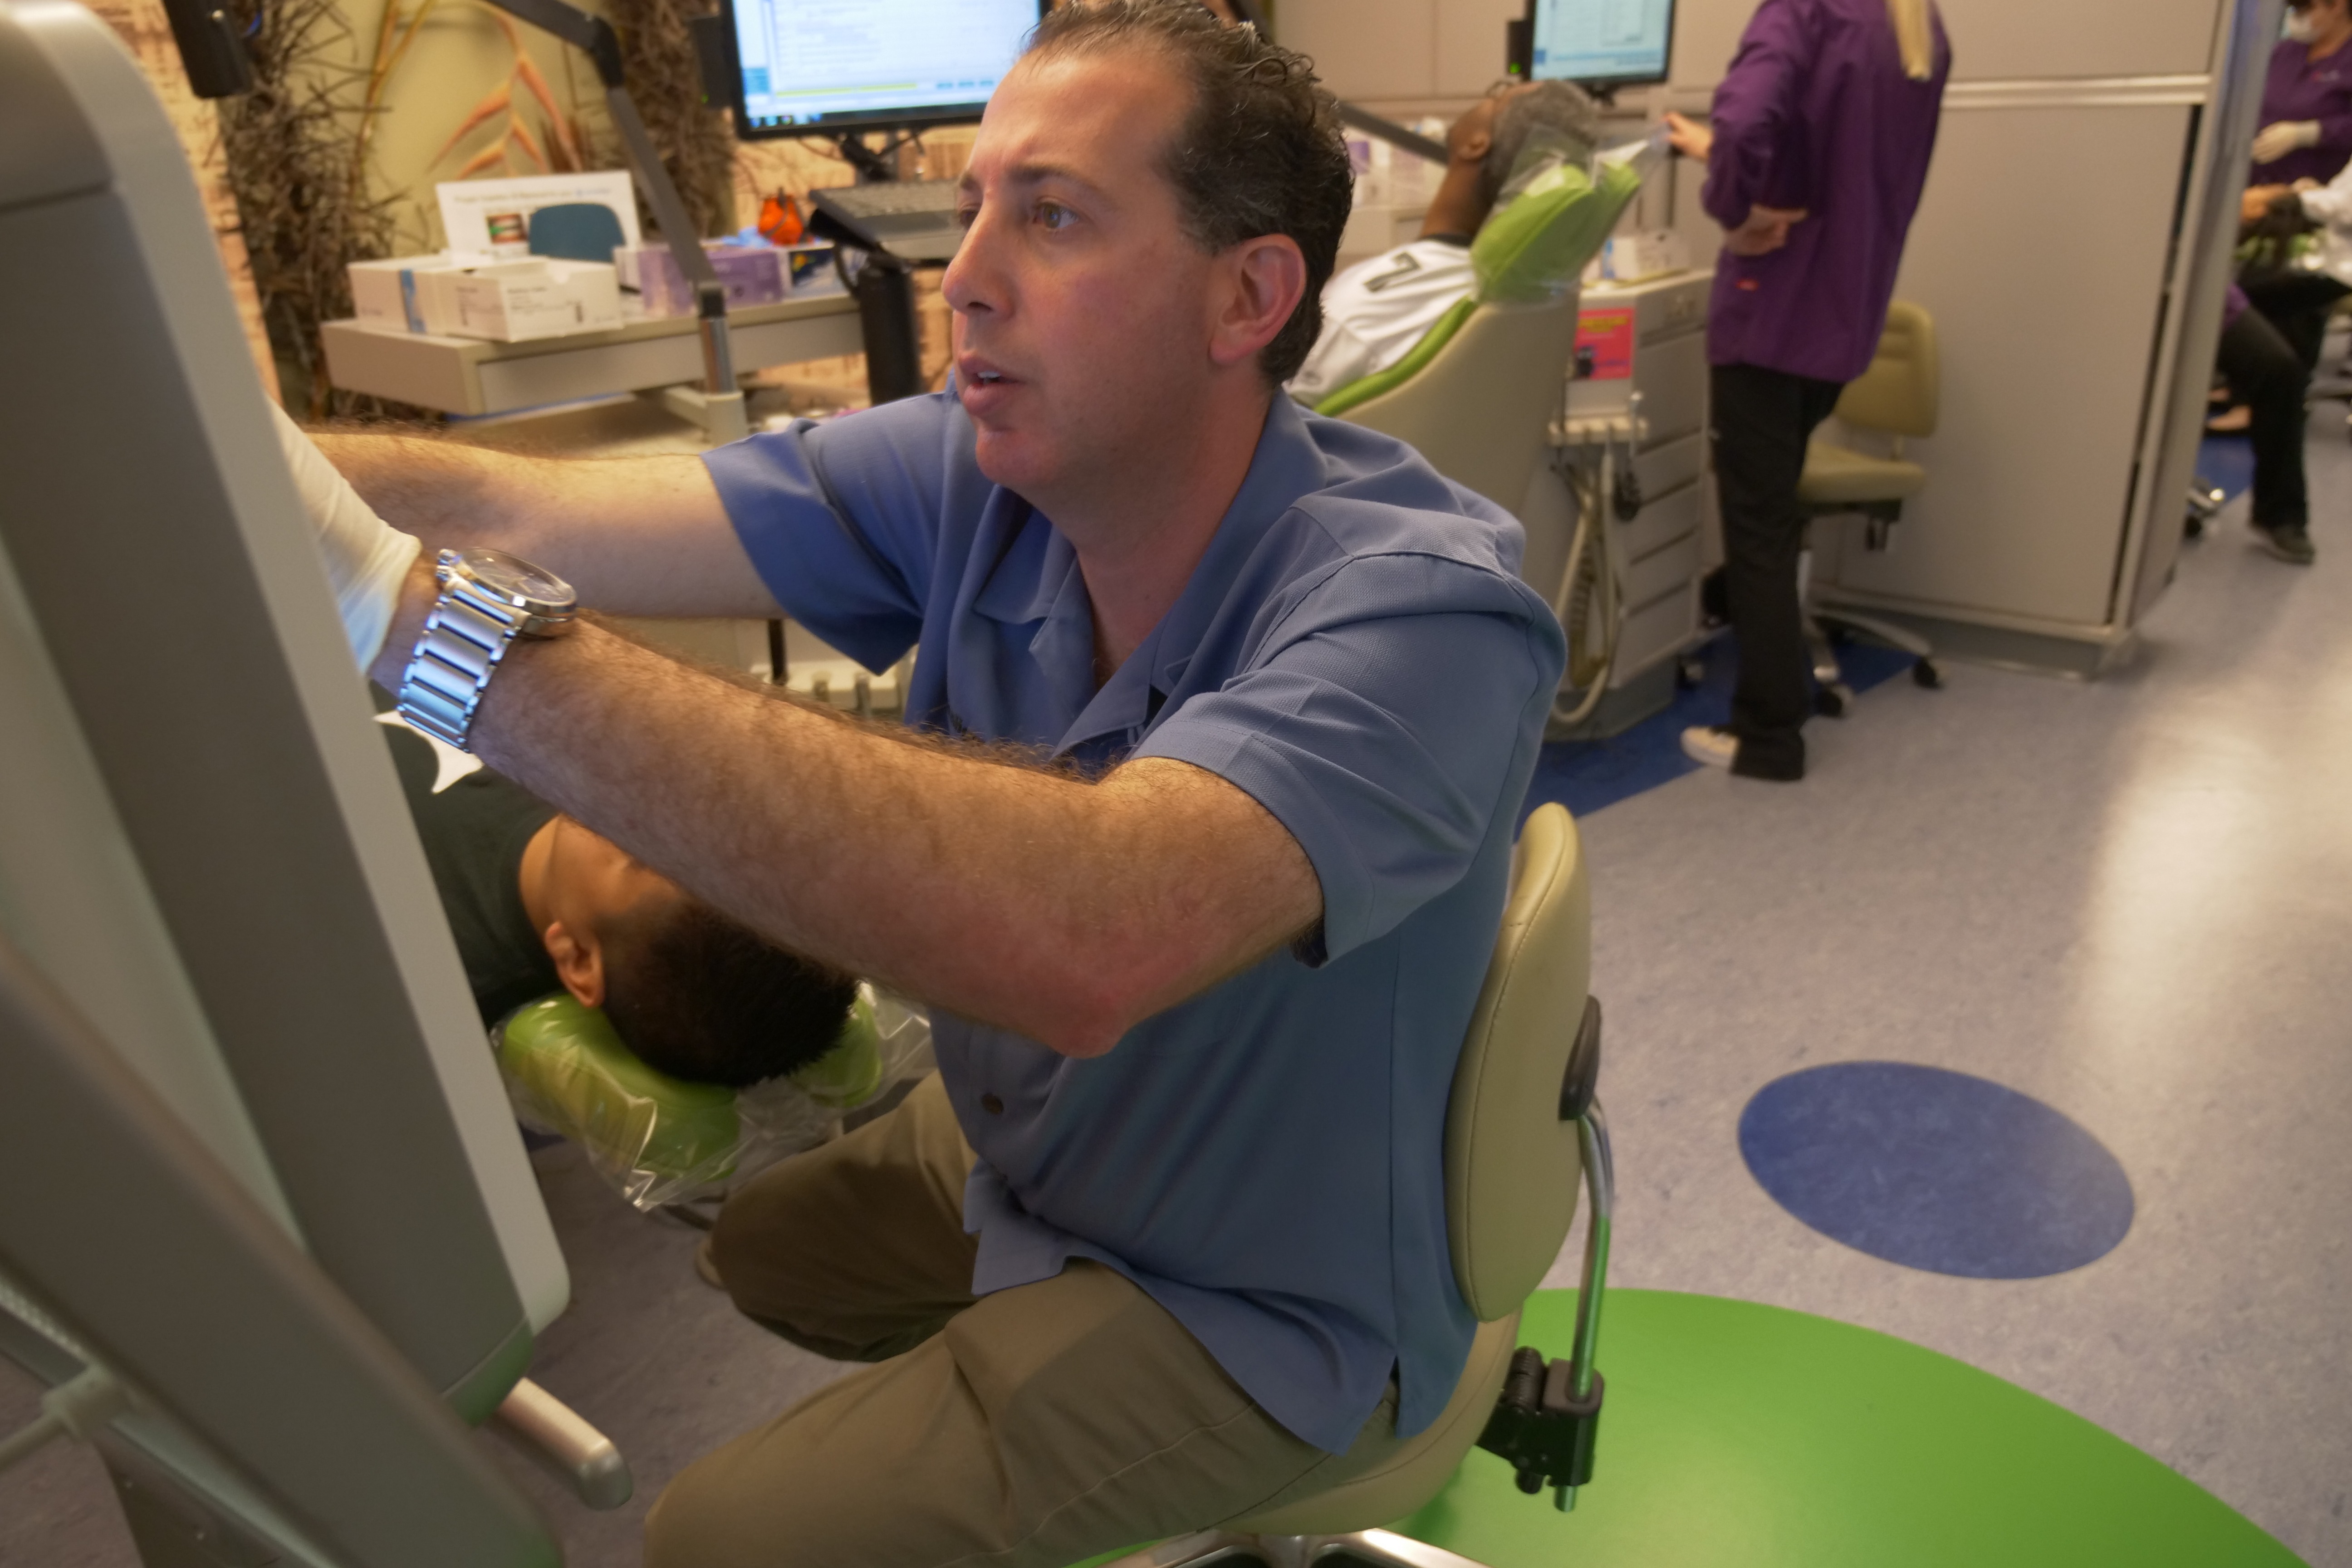 Dr. Brodsky looking at a scan of teeth